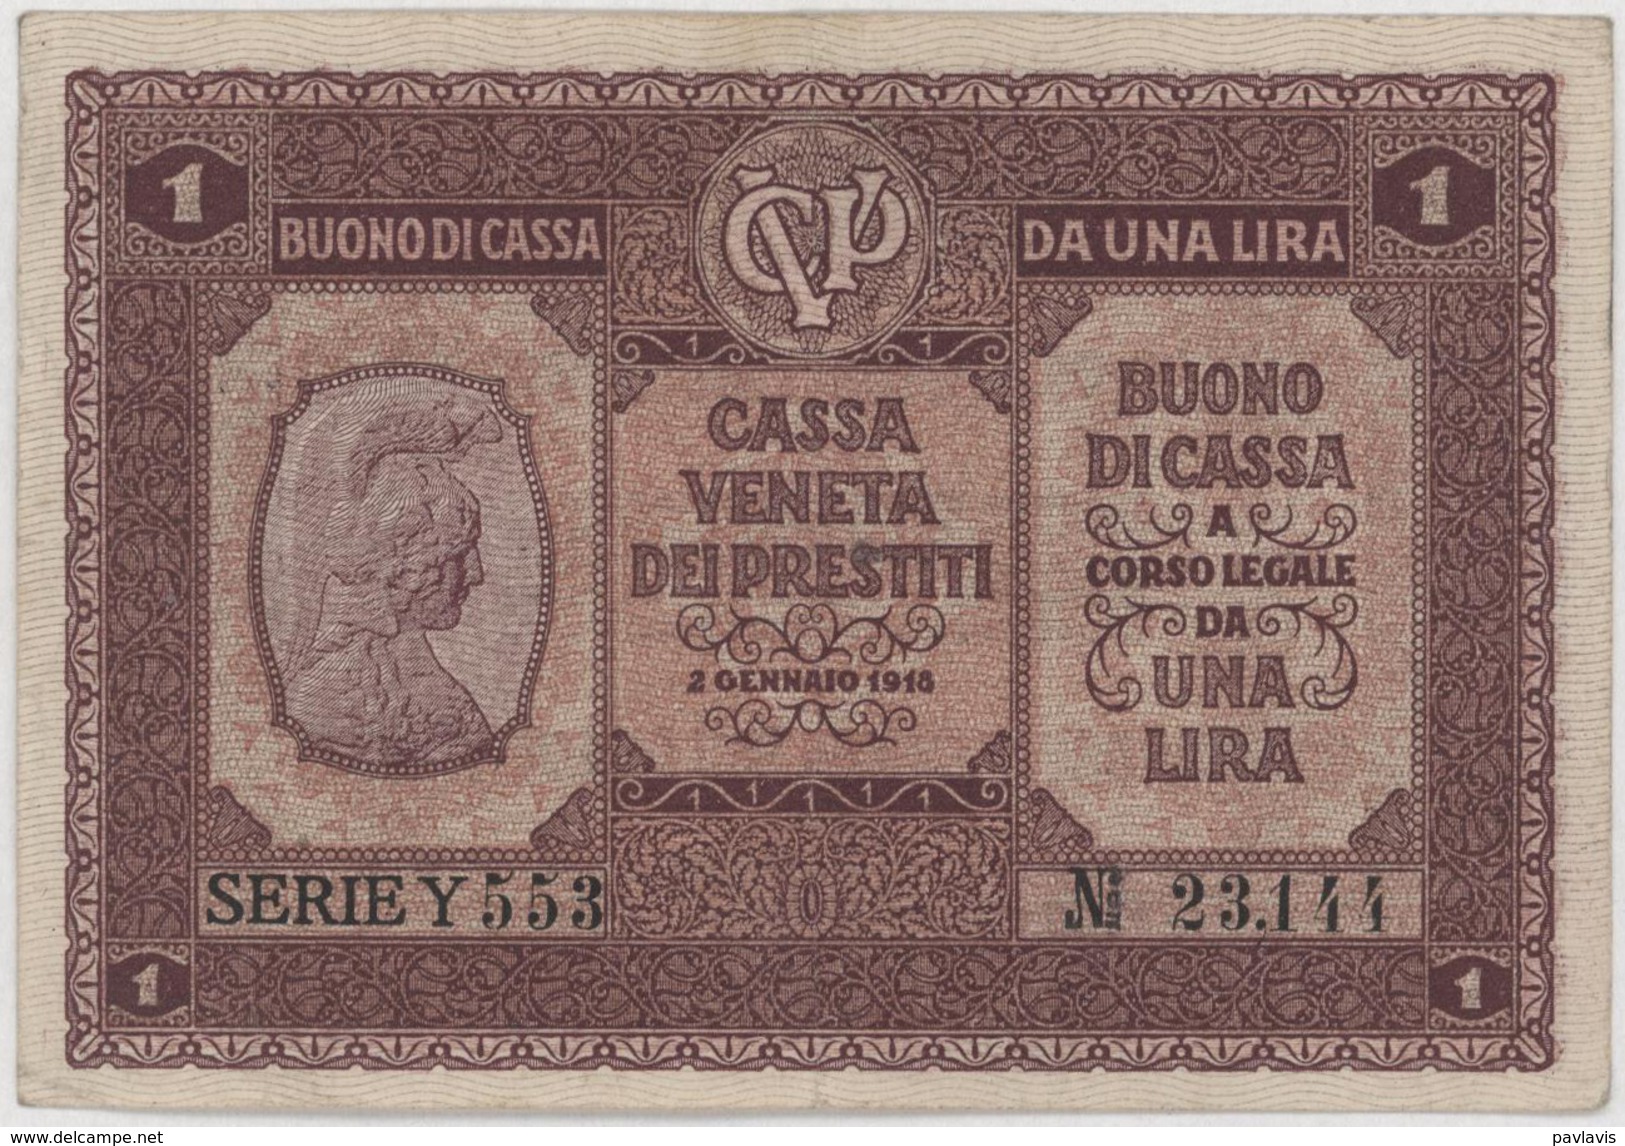 1 Lira / DA UNA LIRA 2 GENNAIO - Italy - Year 1918 - Buoni Di Cassa